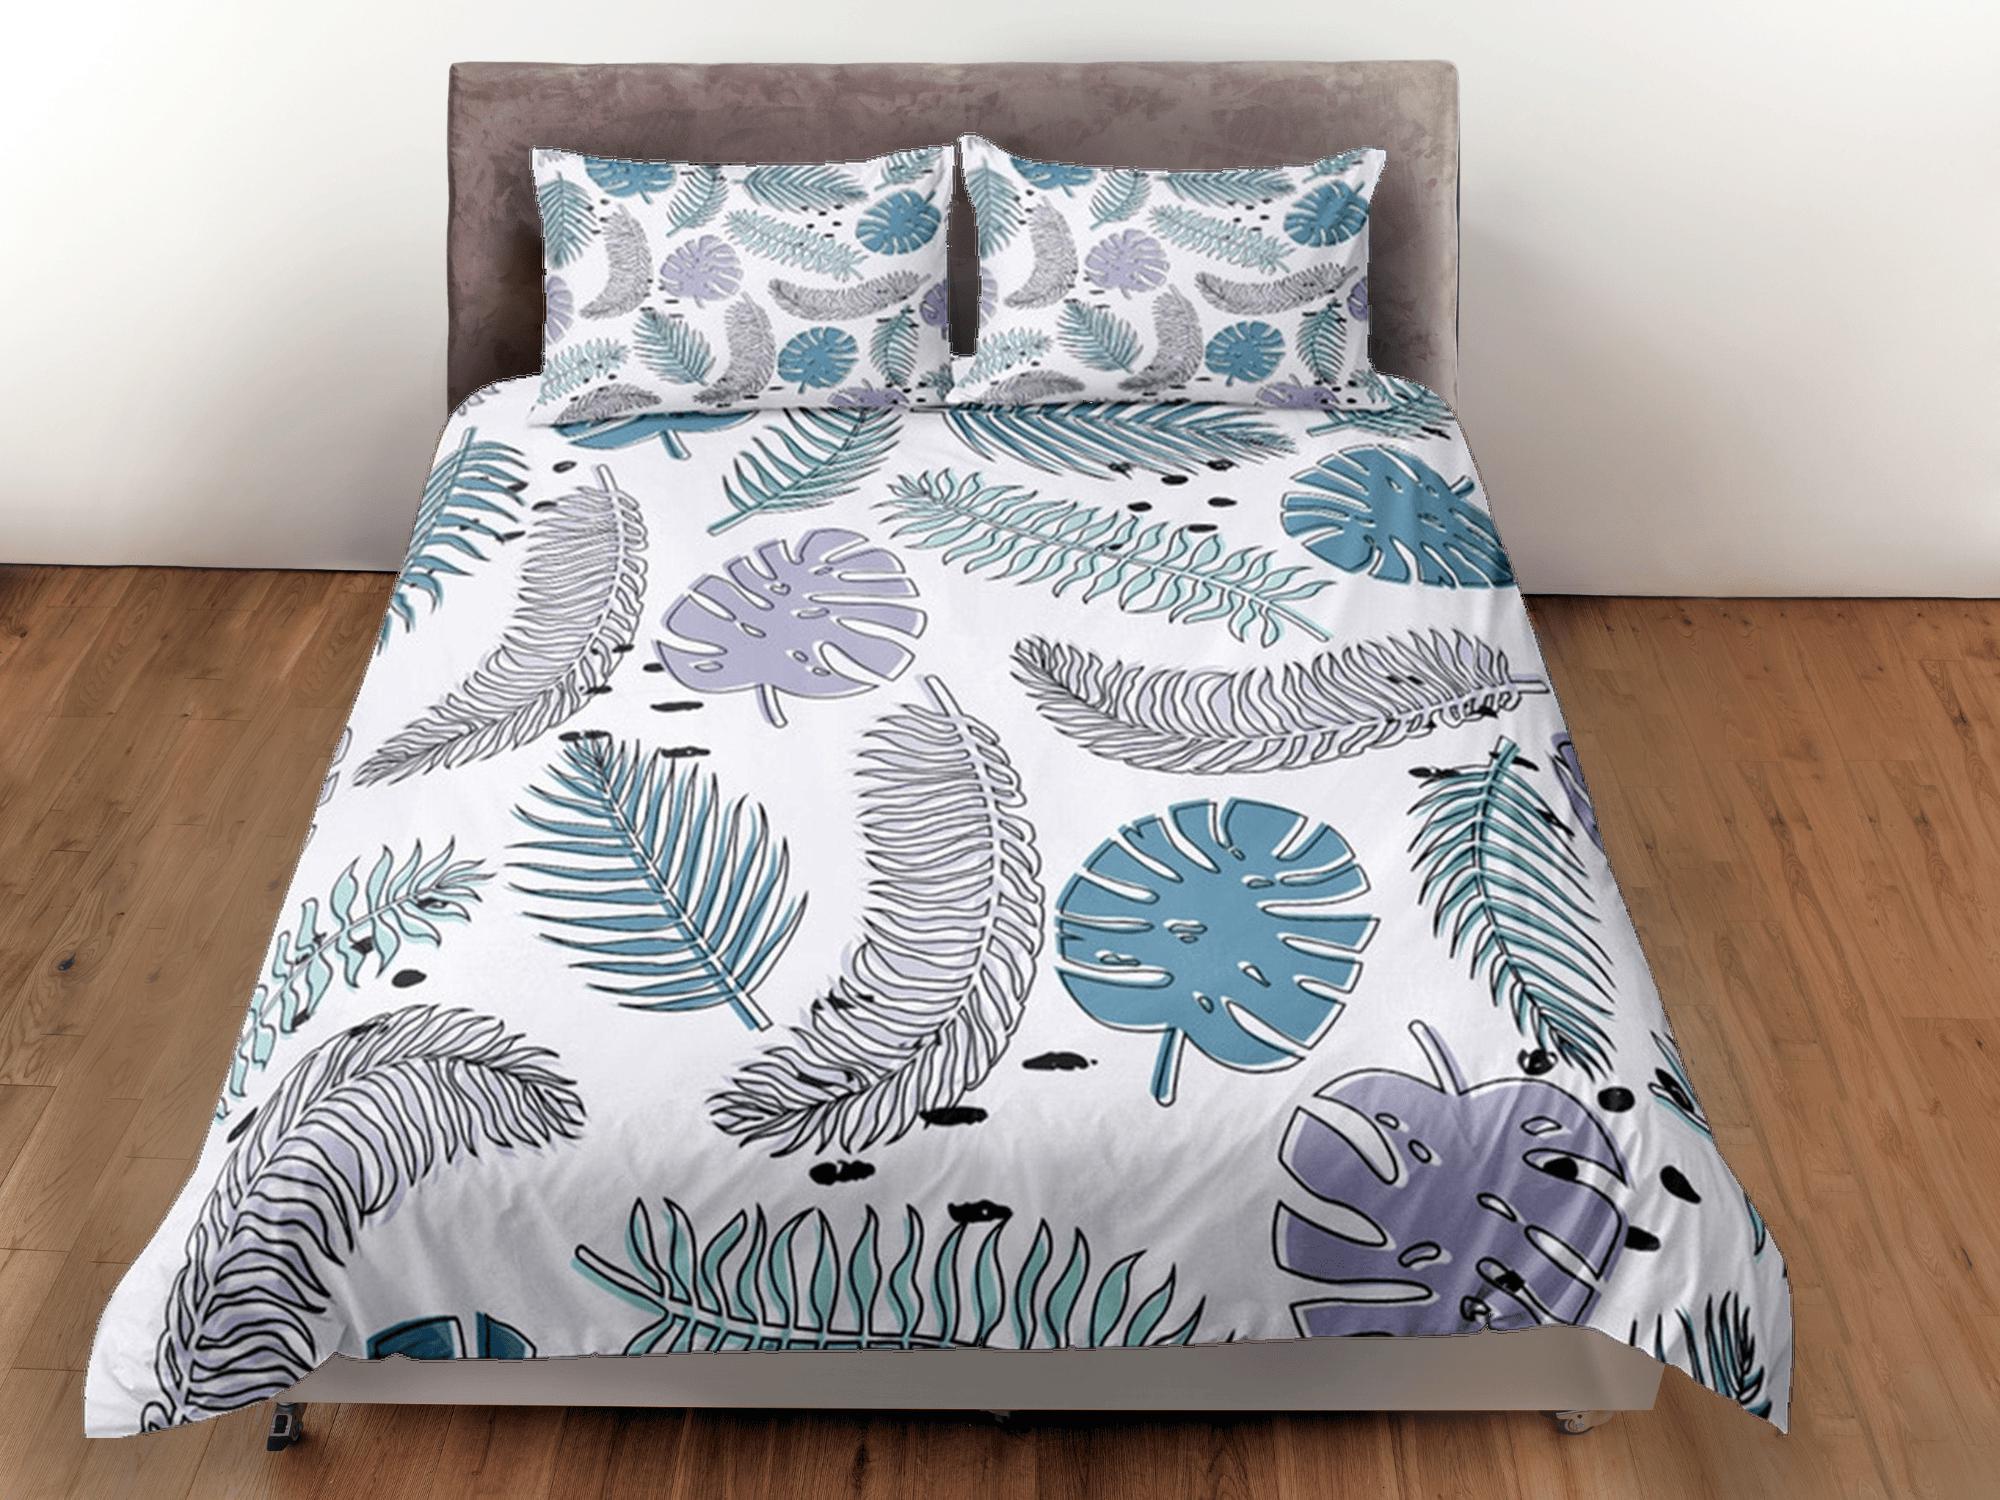 daintyduvet Tropical Duvet Cover Set Botanical, Bedspread Dorm Bedding, Summer Bedroom